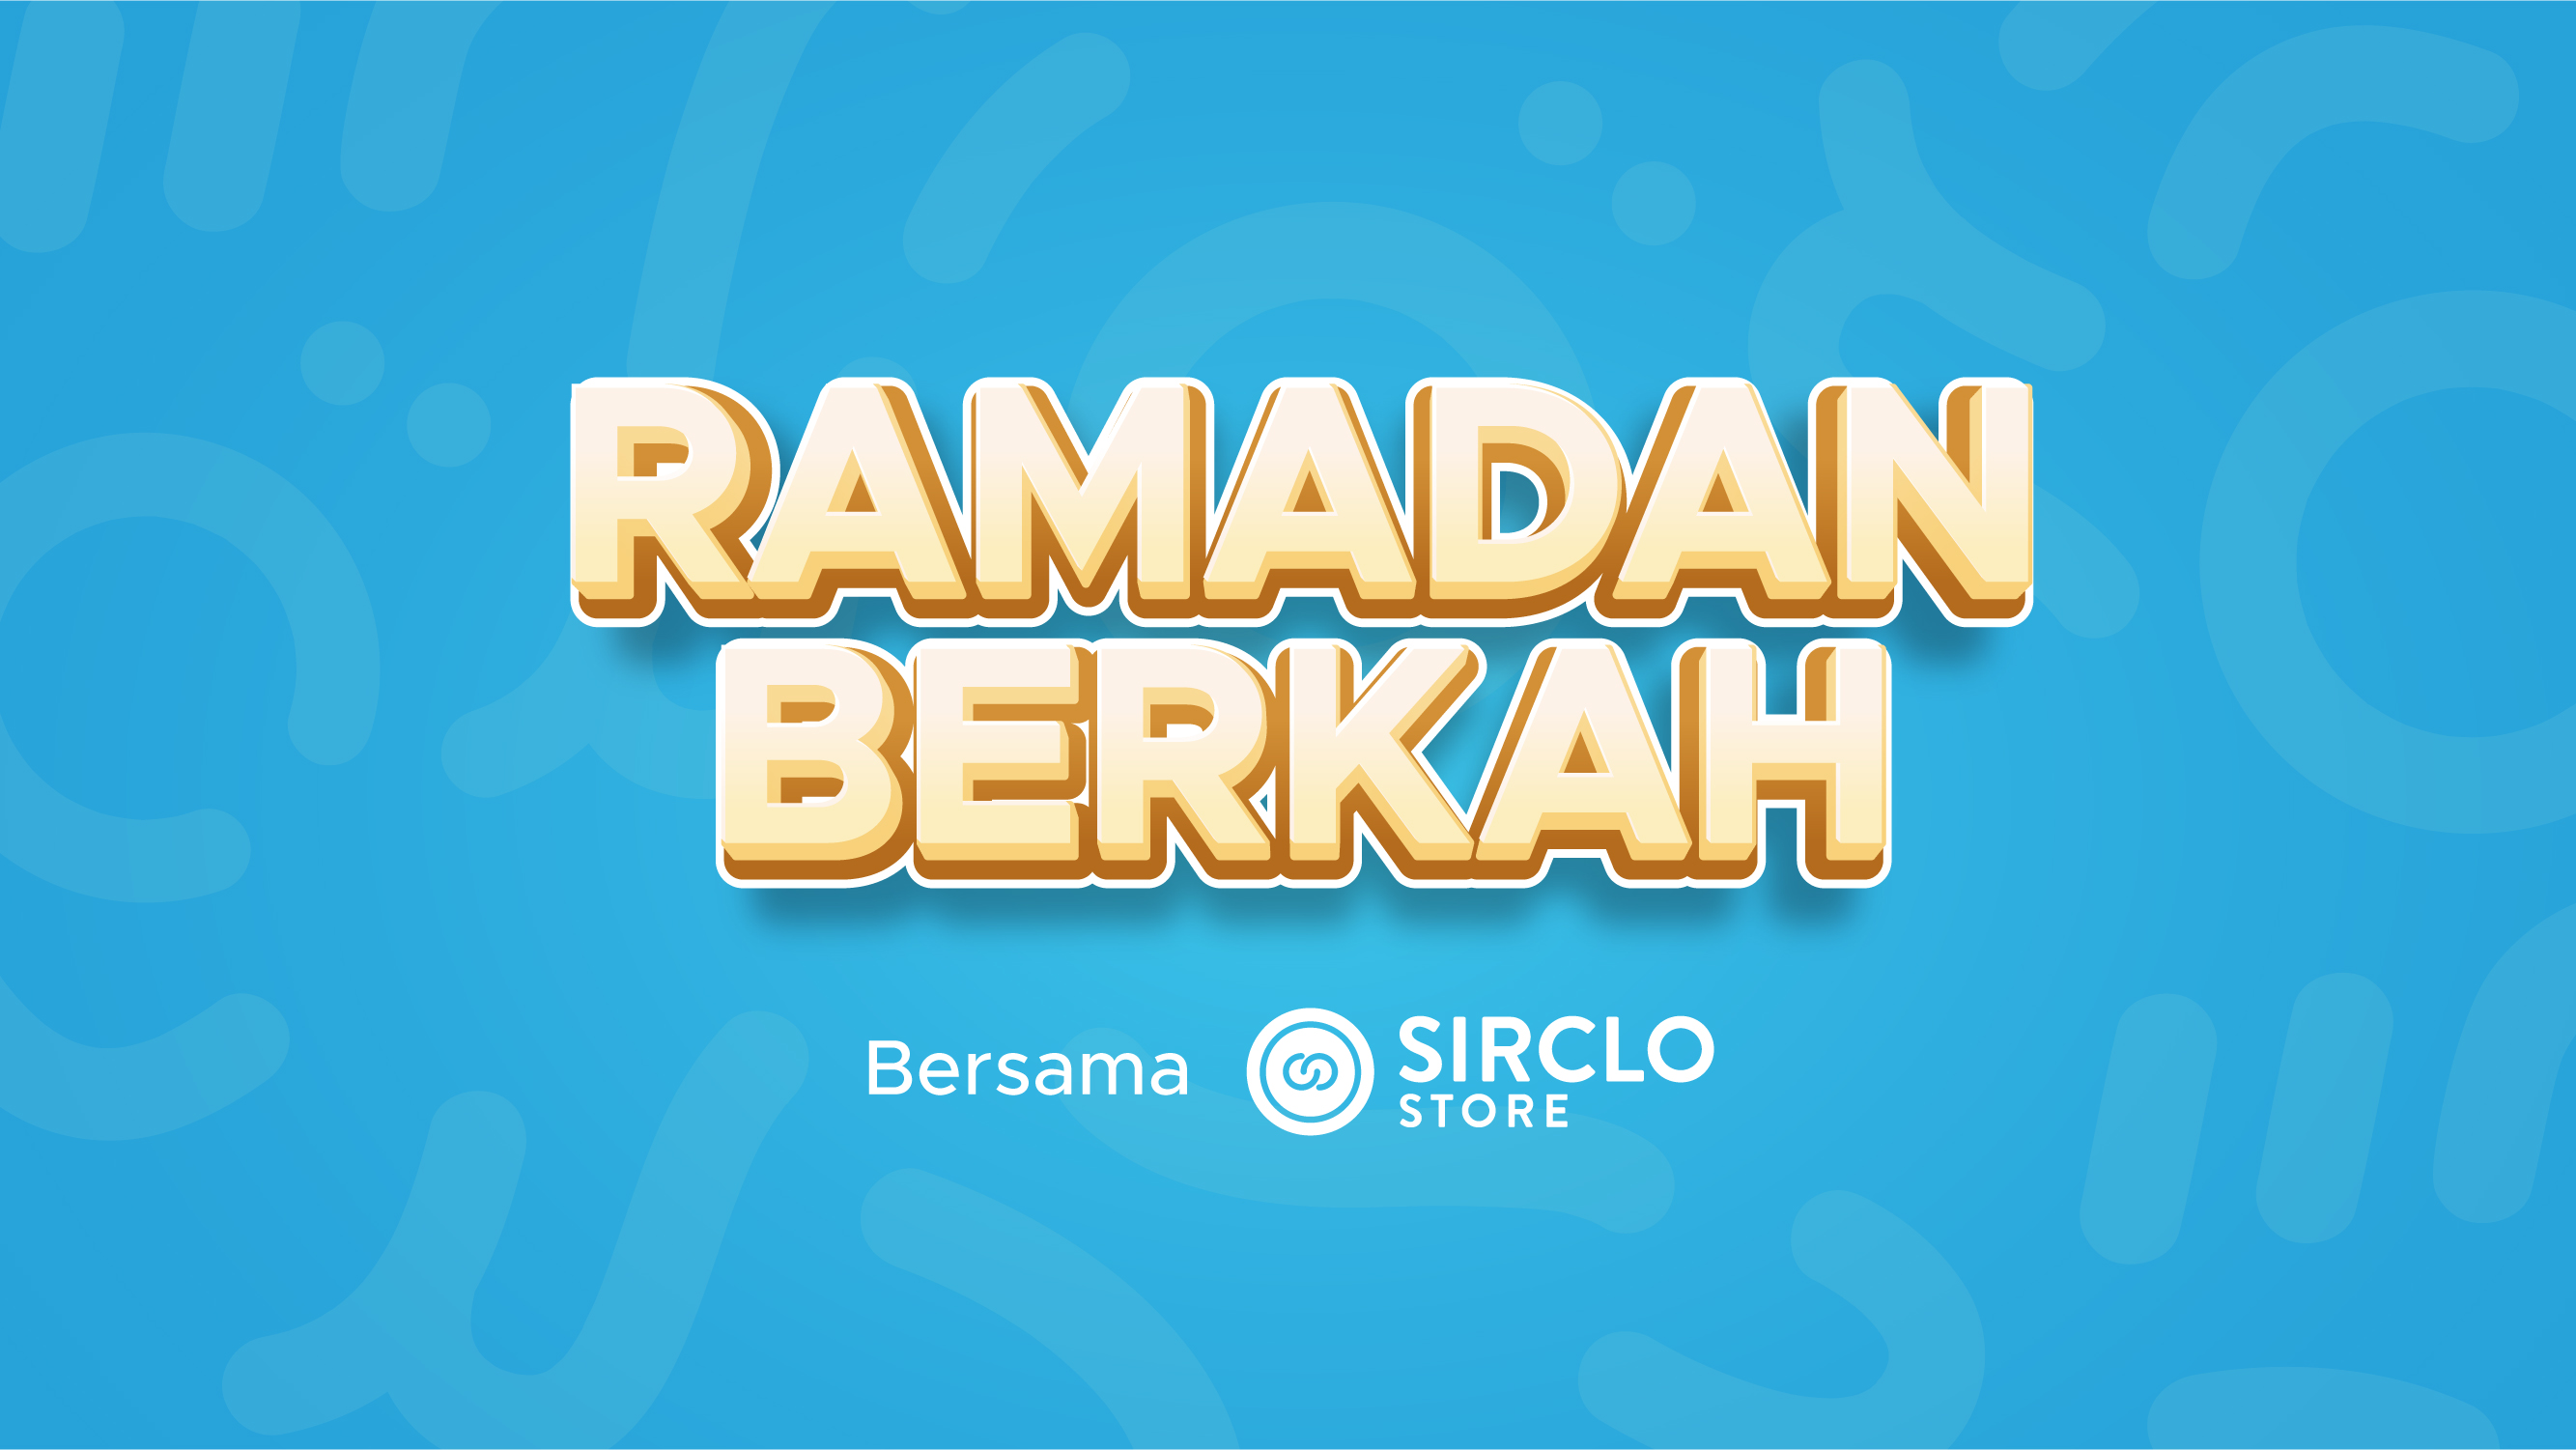 <strong>Ramadan Berkah Untung Melimpah Bersama SIRCLO Store</strong>